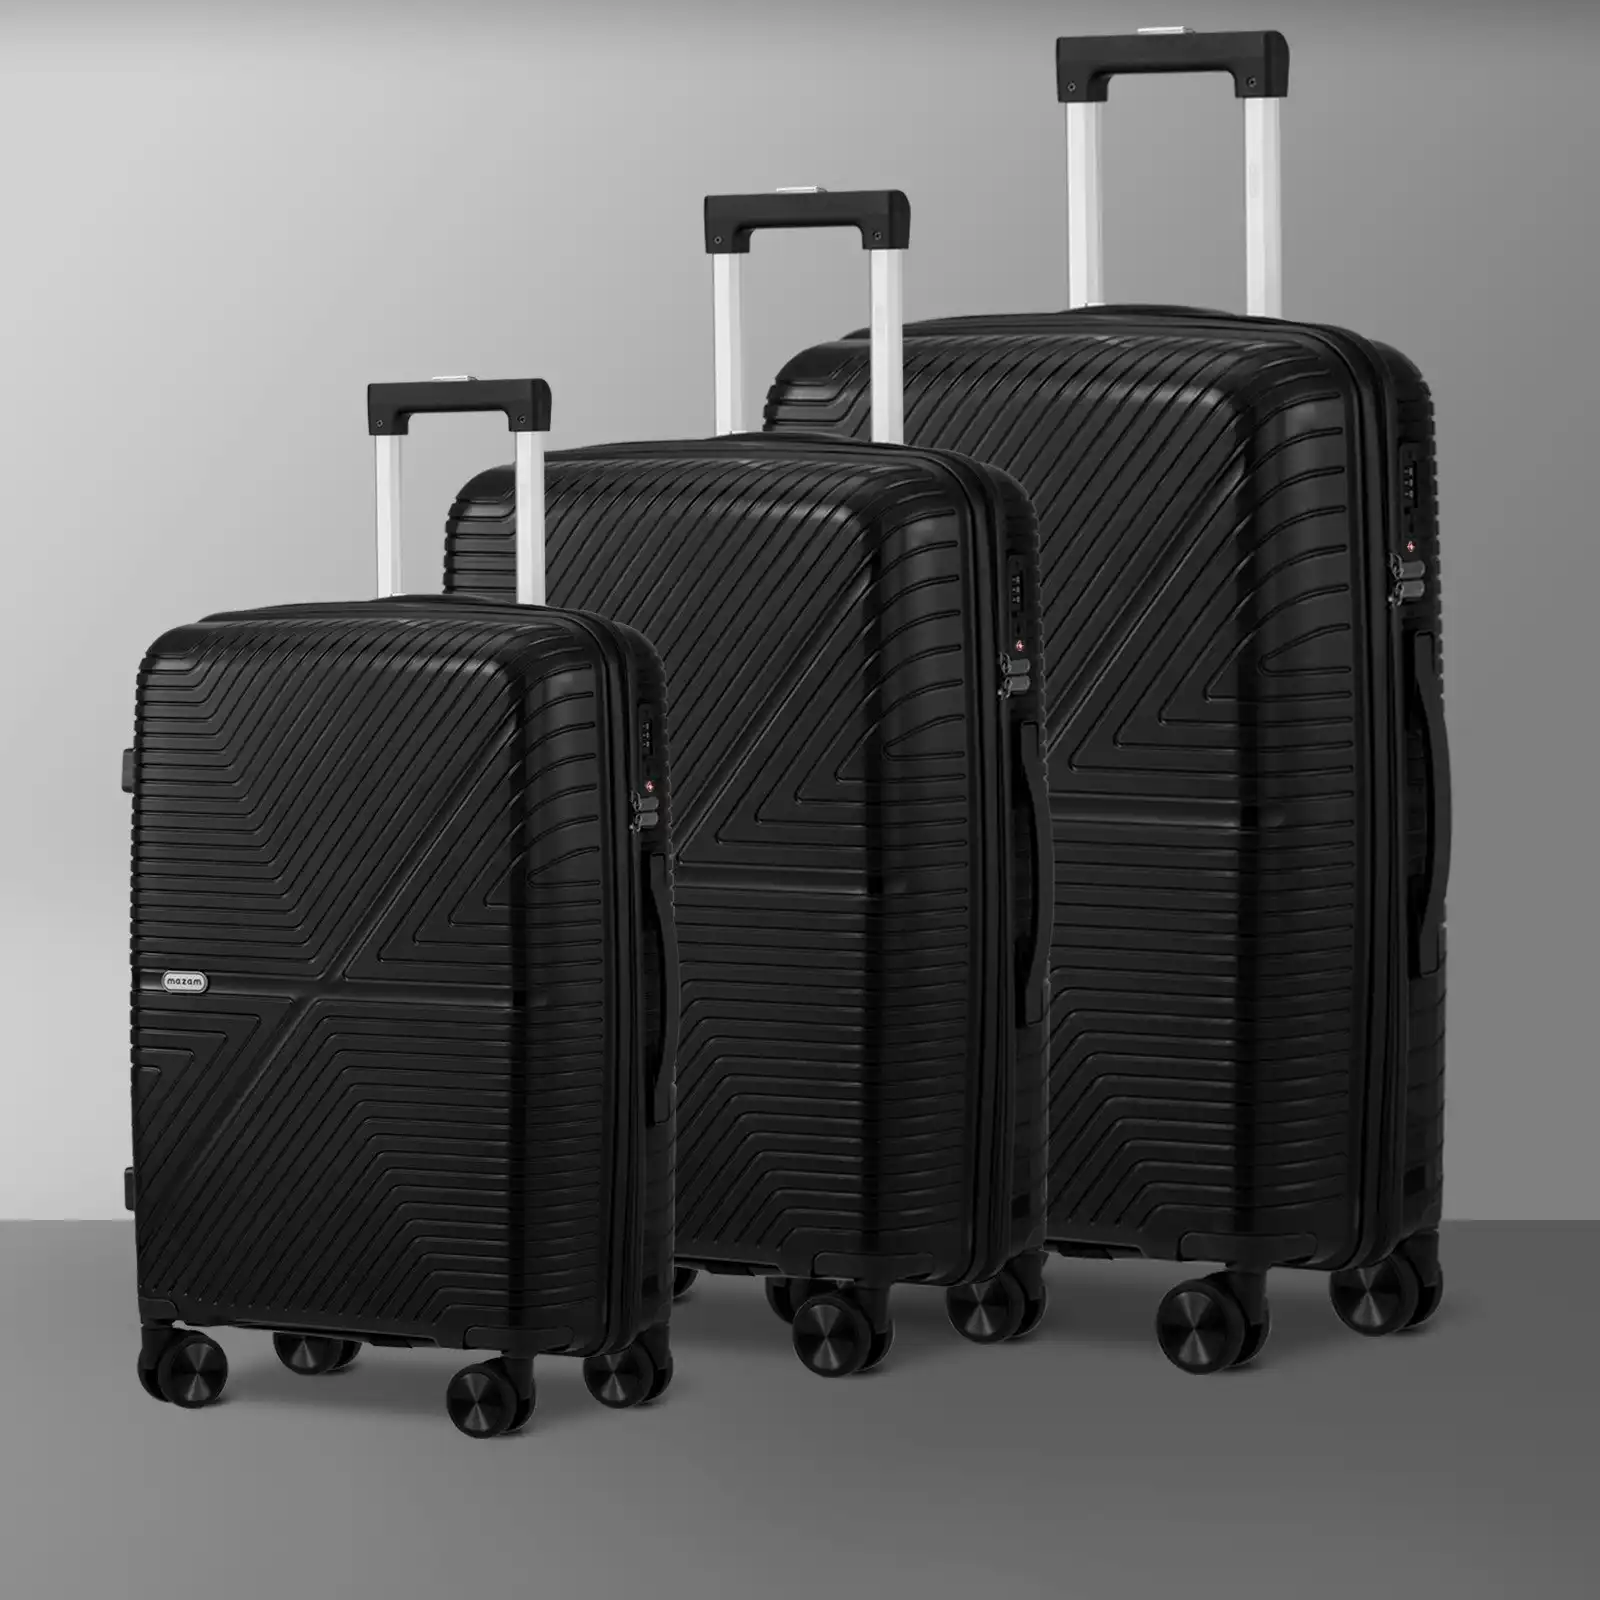 Mazam 3PCS Luggage Suitcase Trolley Set Travel Black PP Case TSA Lock Storage